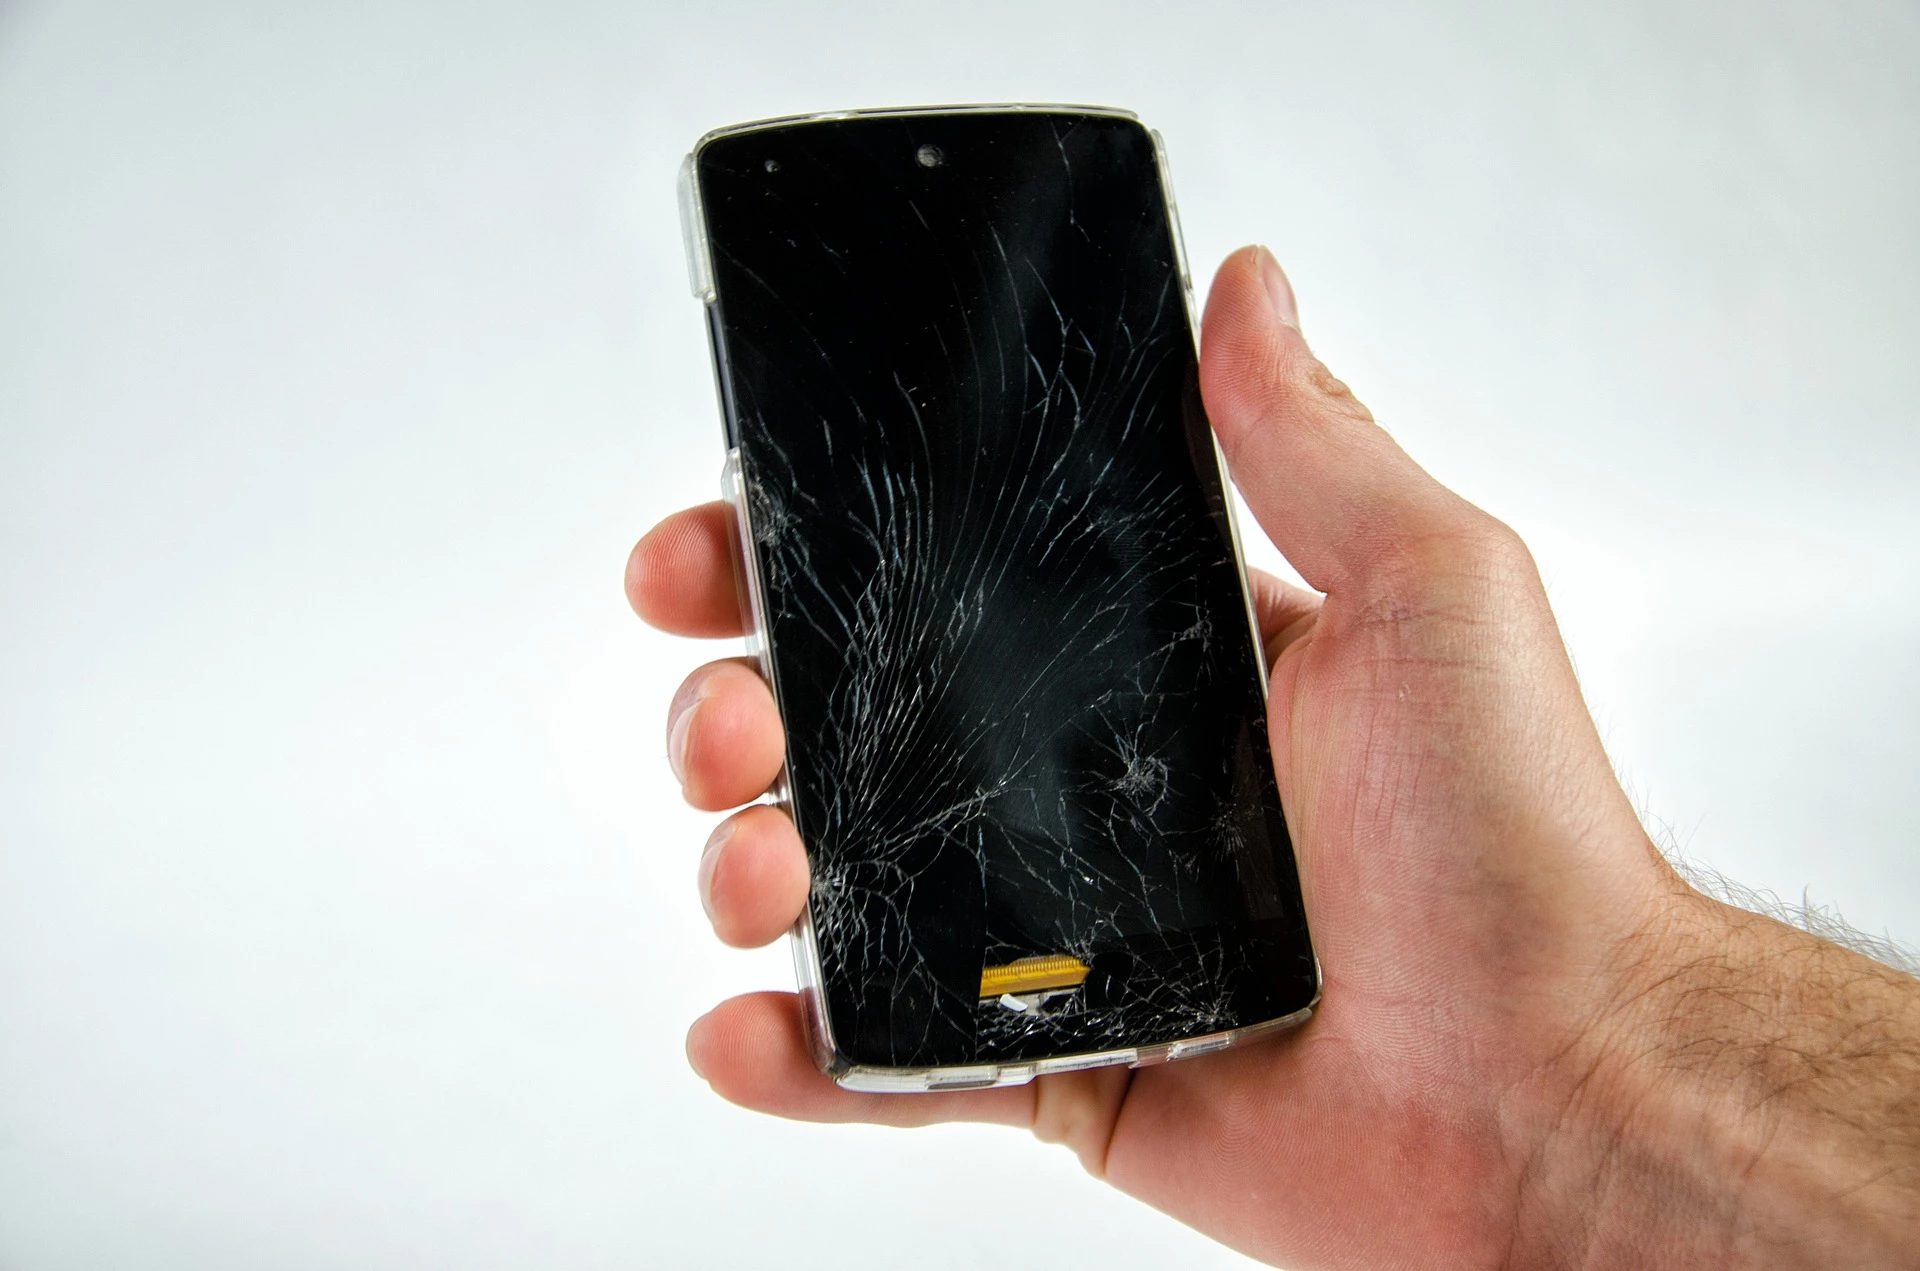 Display-Schäden sind in der Regel nicht so schlimm. Doch aufgepasst, wenn man sein Handy einschickt, wird es oft zurückgesetzt und die Daten sind für immer verloren